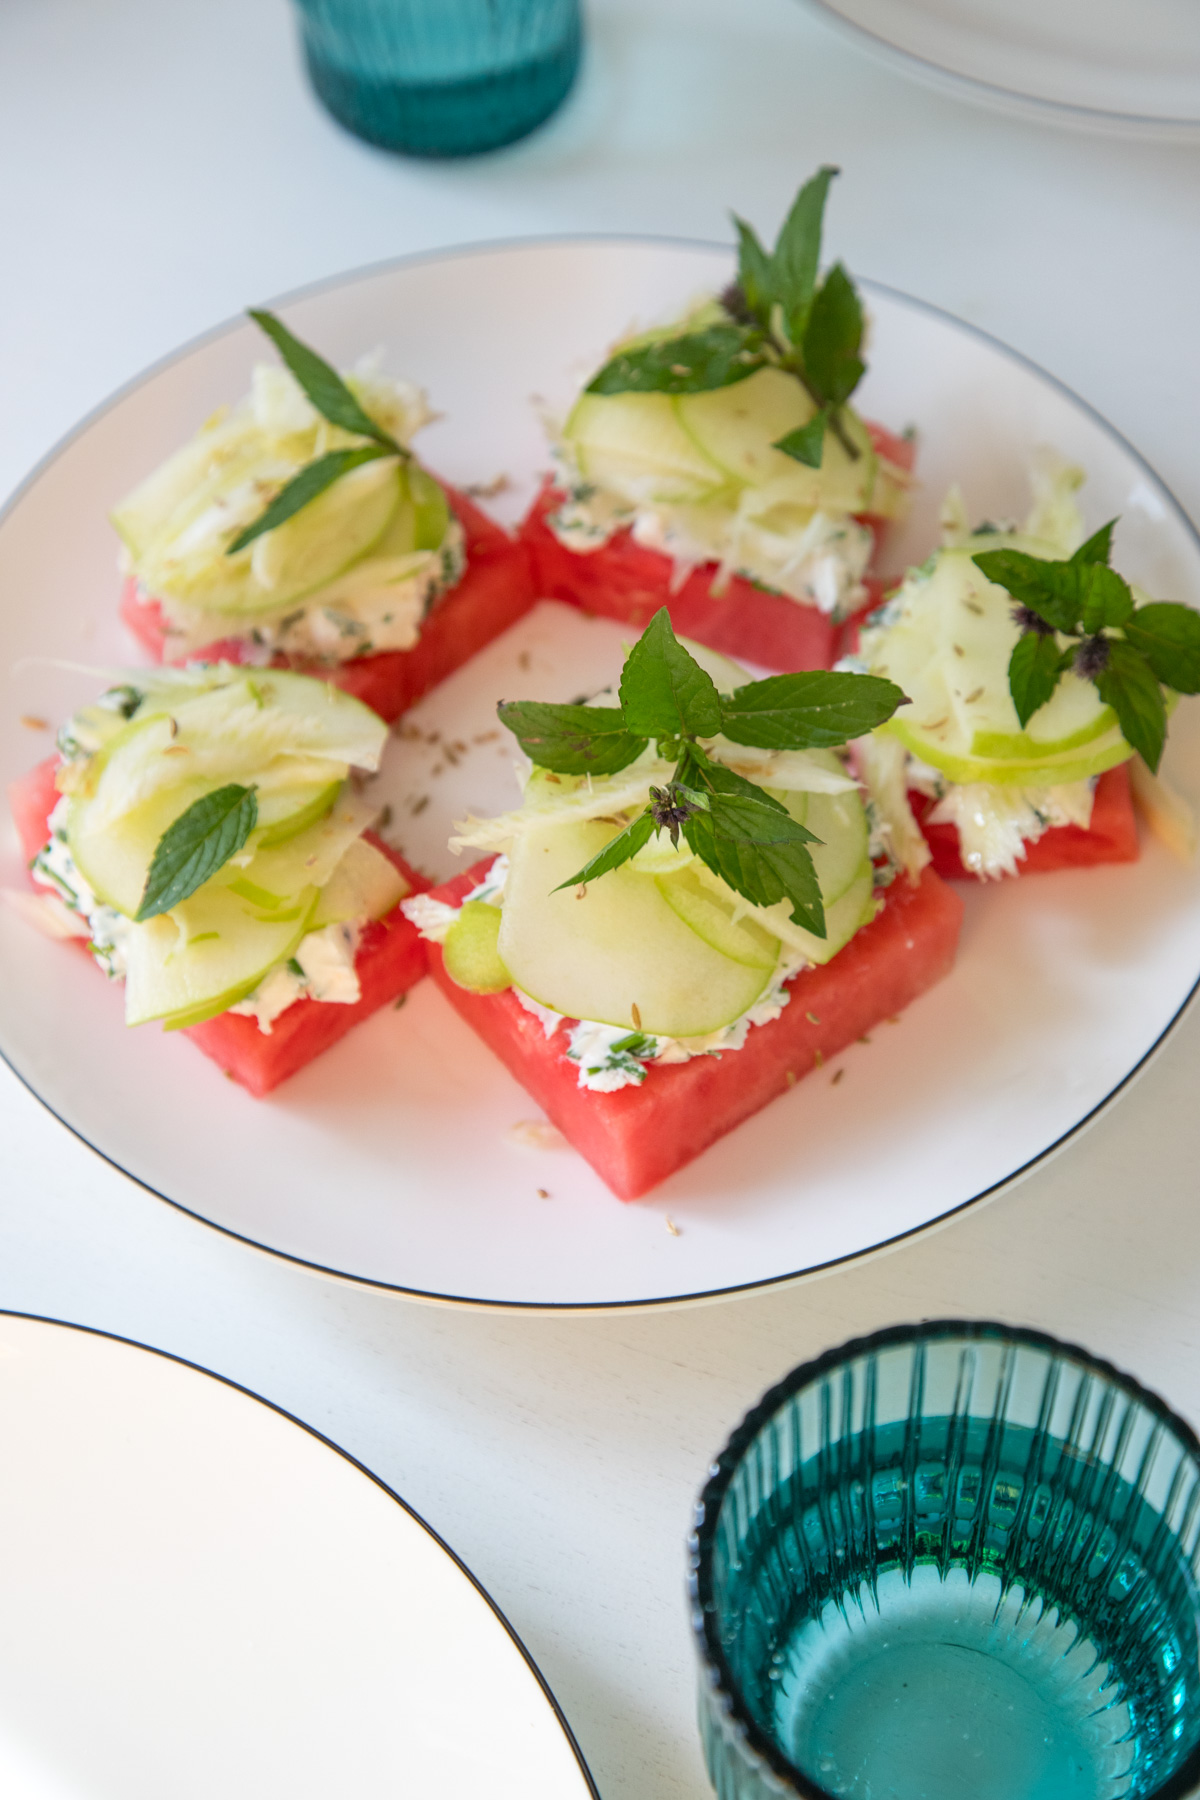 Die Vorspeise des Sommers: Wassermelone mit Ziegenkäsecreme und Fenchel! Die Kombination wird euch wirklich umhauen! Außerdem macht es optisch richtig was her.